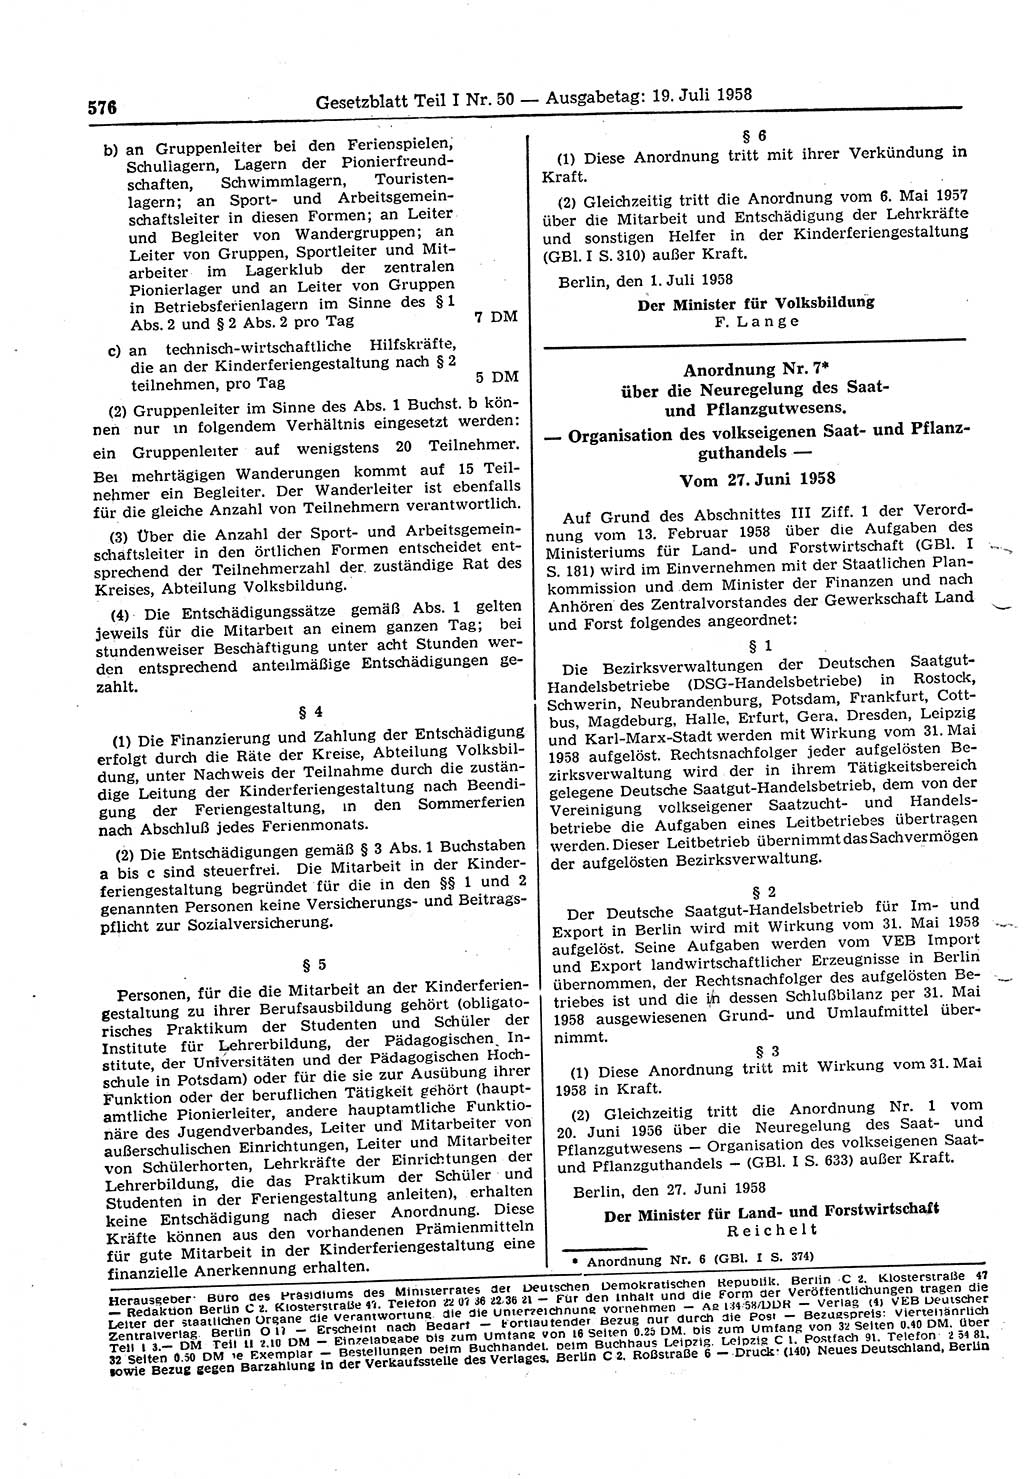 Gesetzblatt (GBl.) der Deutschen Demokratischen Republik (DDR) Teil Ⅰ 1958, Seite 576 (GBl. DDR Ⅰ 1958, S. 576)